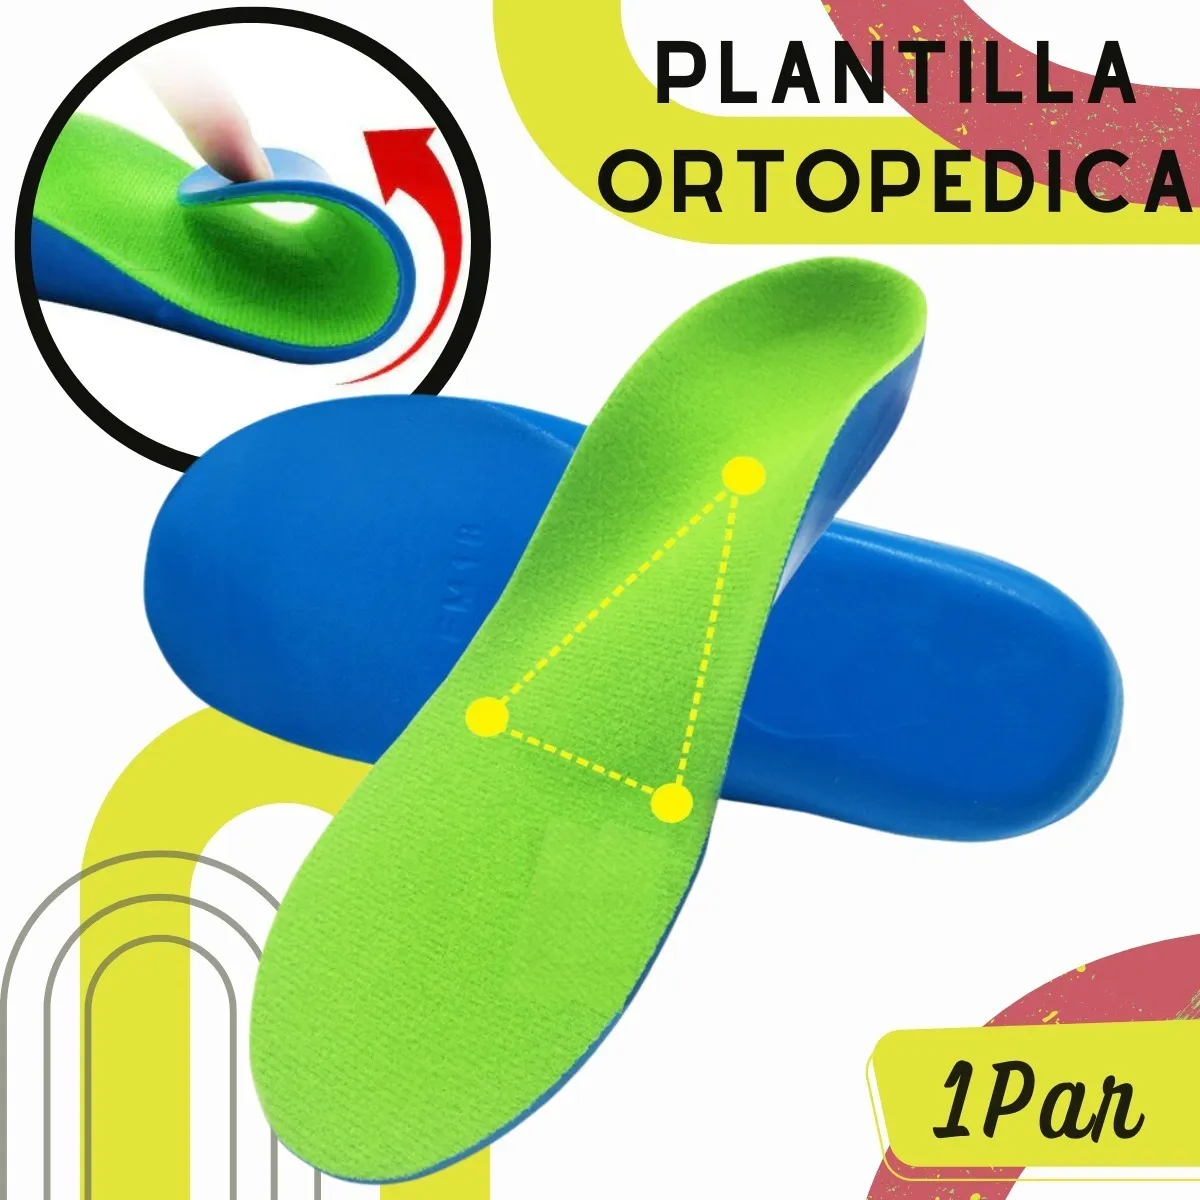 Plantillas Ortopédicas Zapatos Soporte Arco Pie Plano